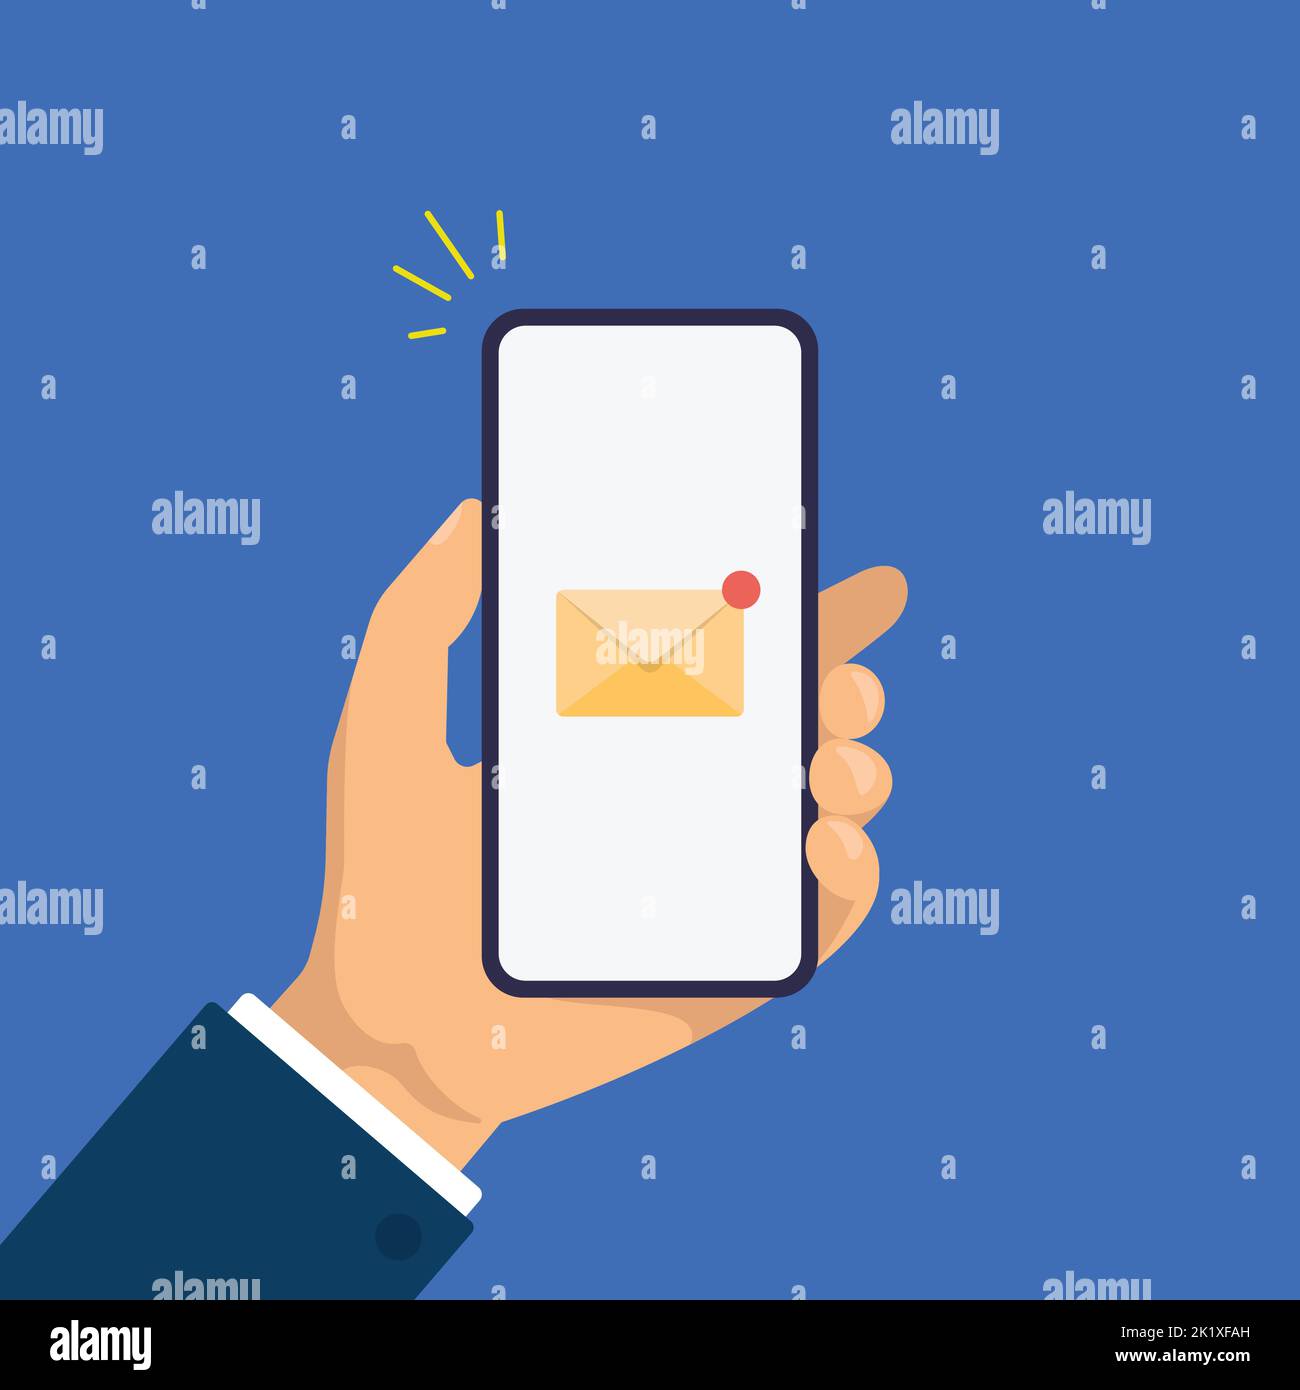 Neue E-Mail-Benachrichtigung auf dem Smartphone-Bildschirm. Die Hand hält das Smartphone. Moderne flache Design-Illustration. Stock Vektor